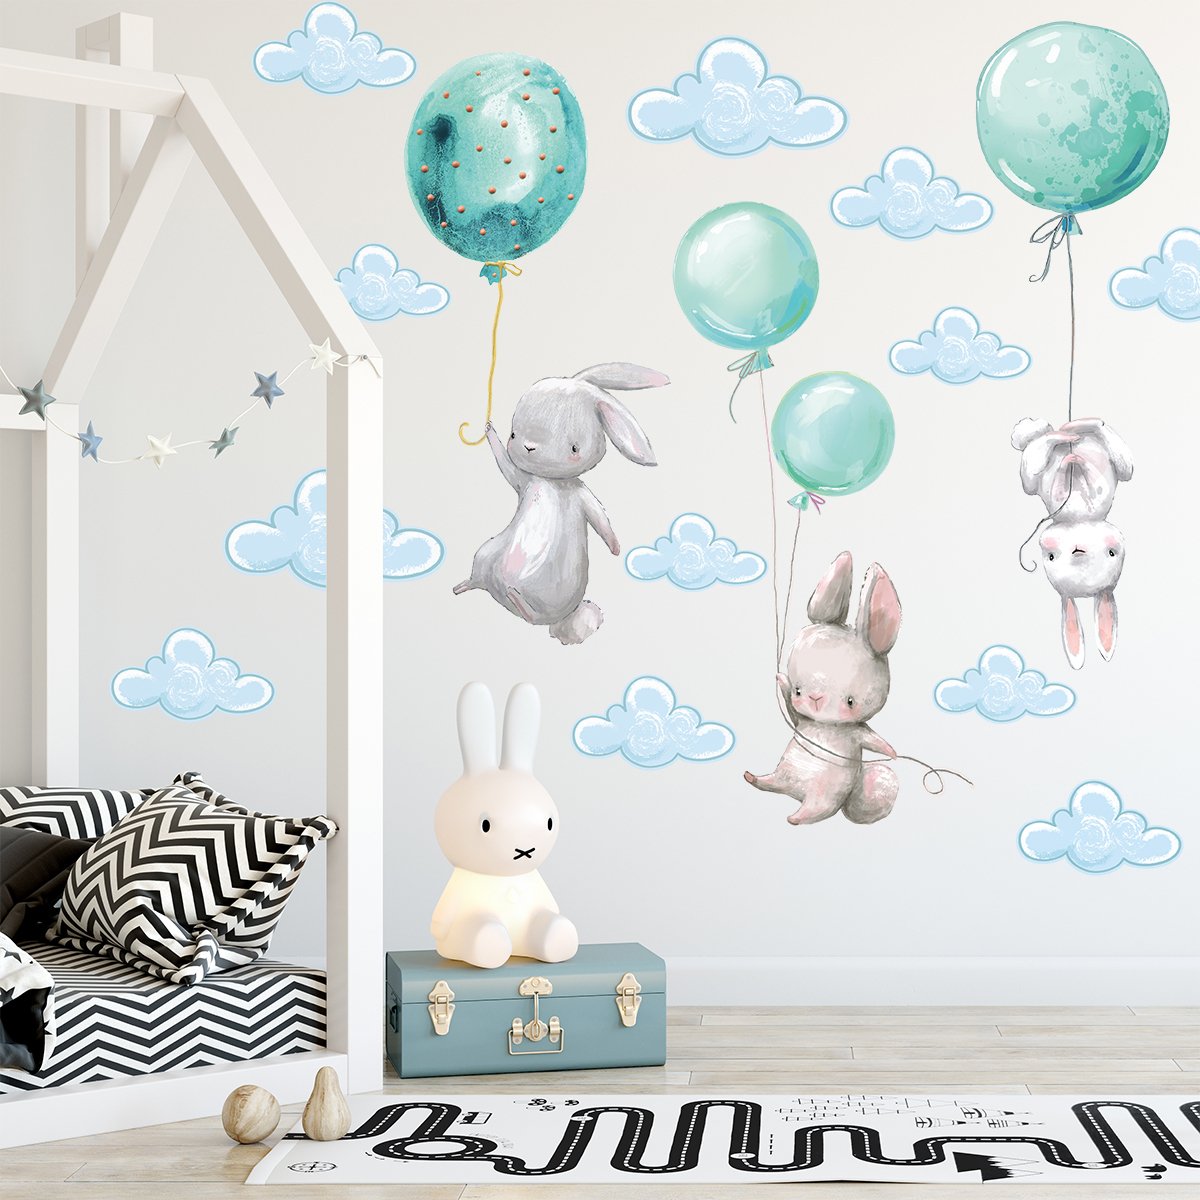 Naklejki na ścianę królik i miętowe balony#kolor_mietowy